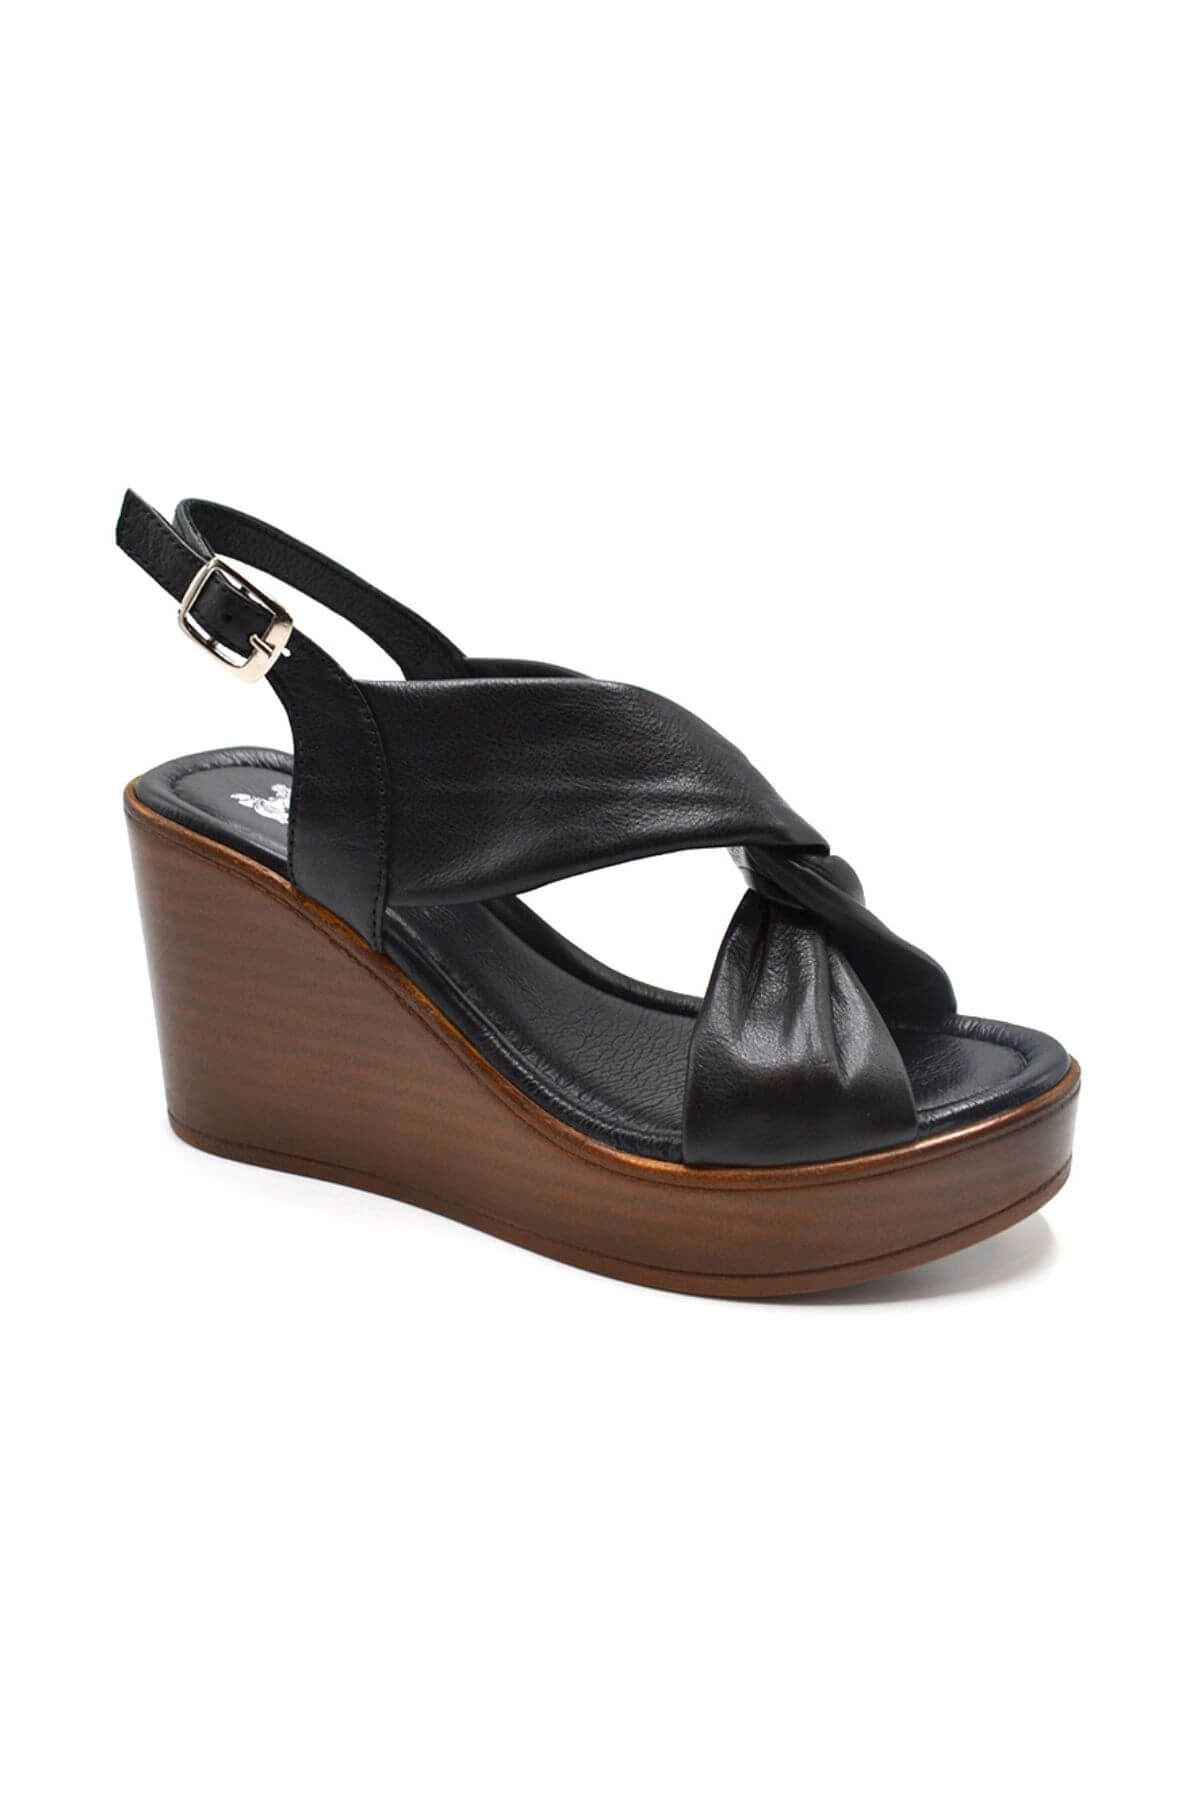 Kadın Dolgu Topuk Deri Sandalet Siyah 2310803Y - Thumbnail